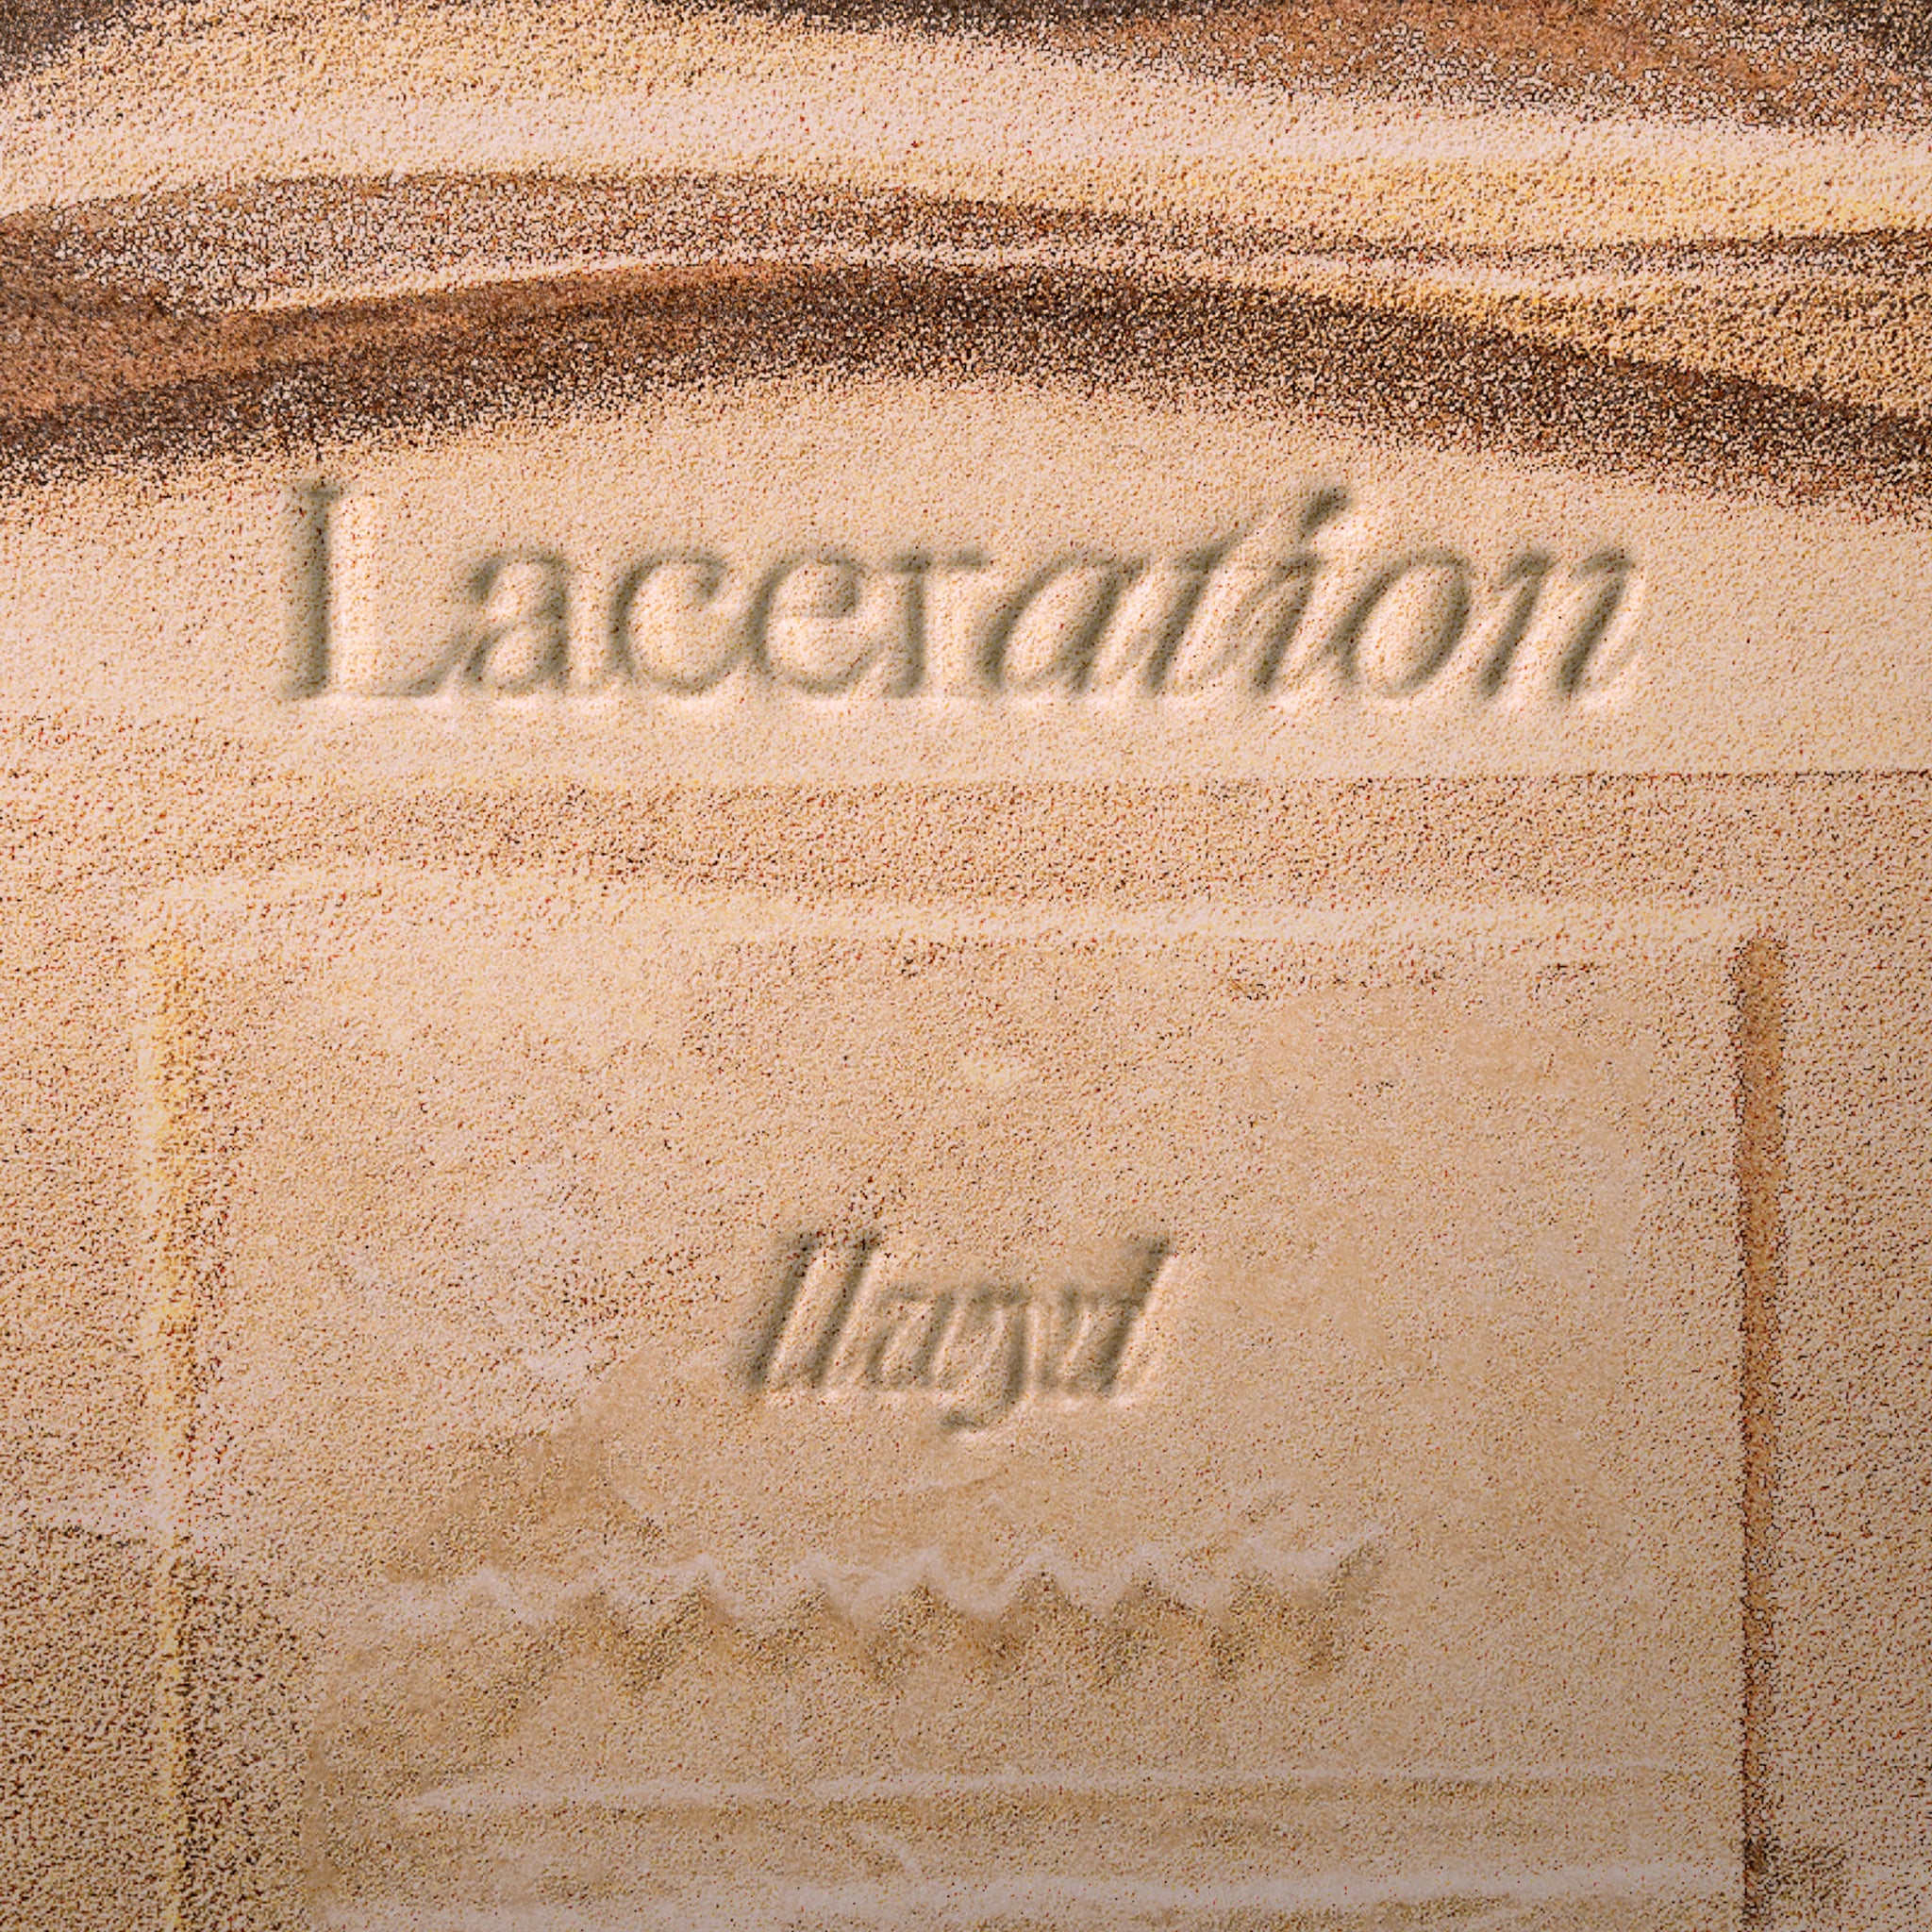 Llwyd- Laceration